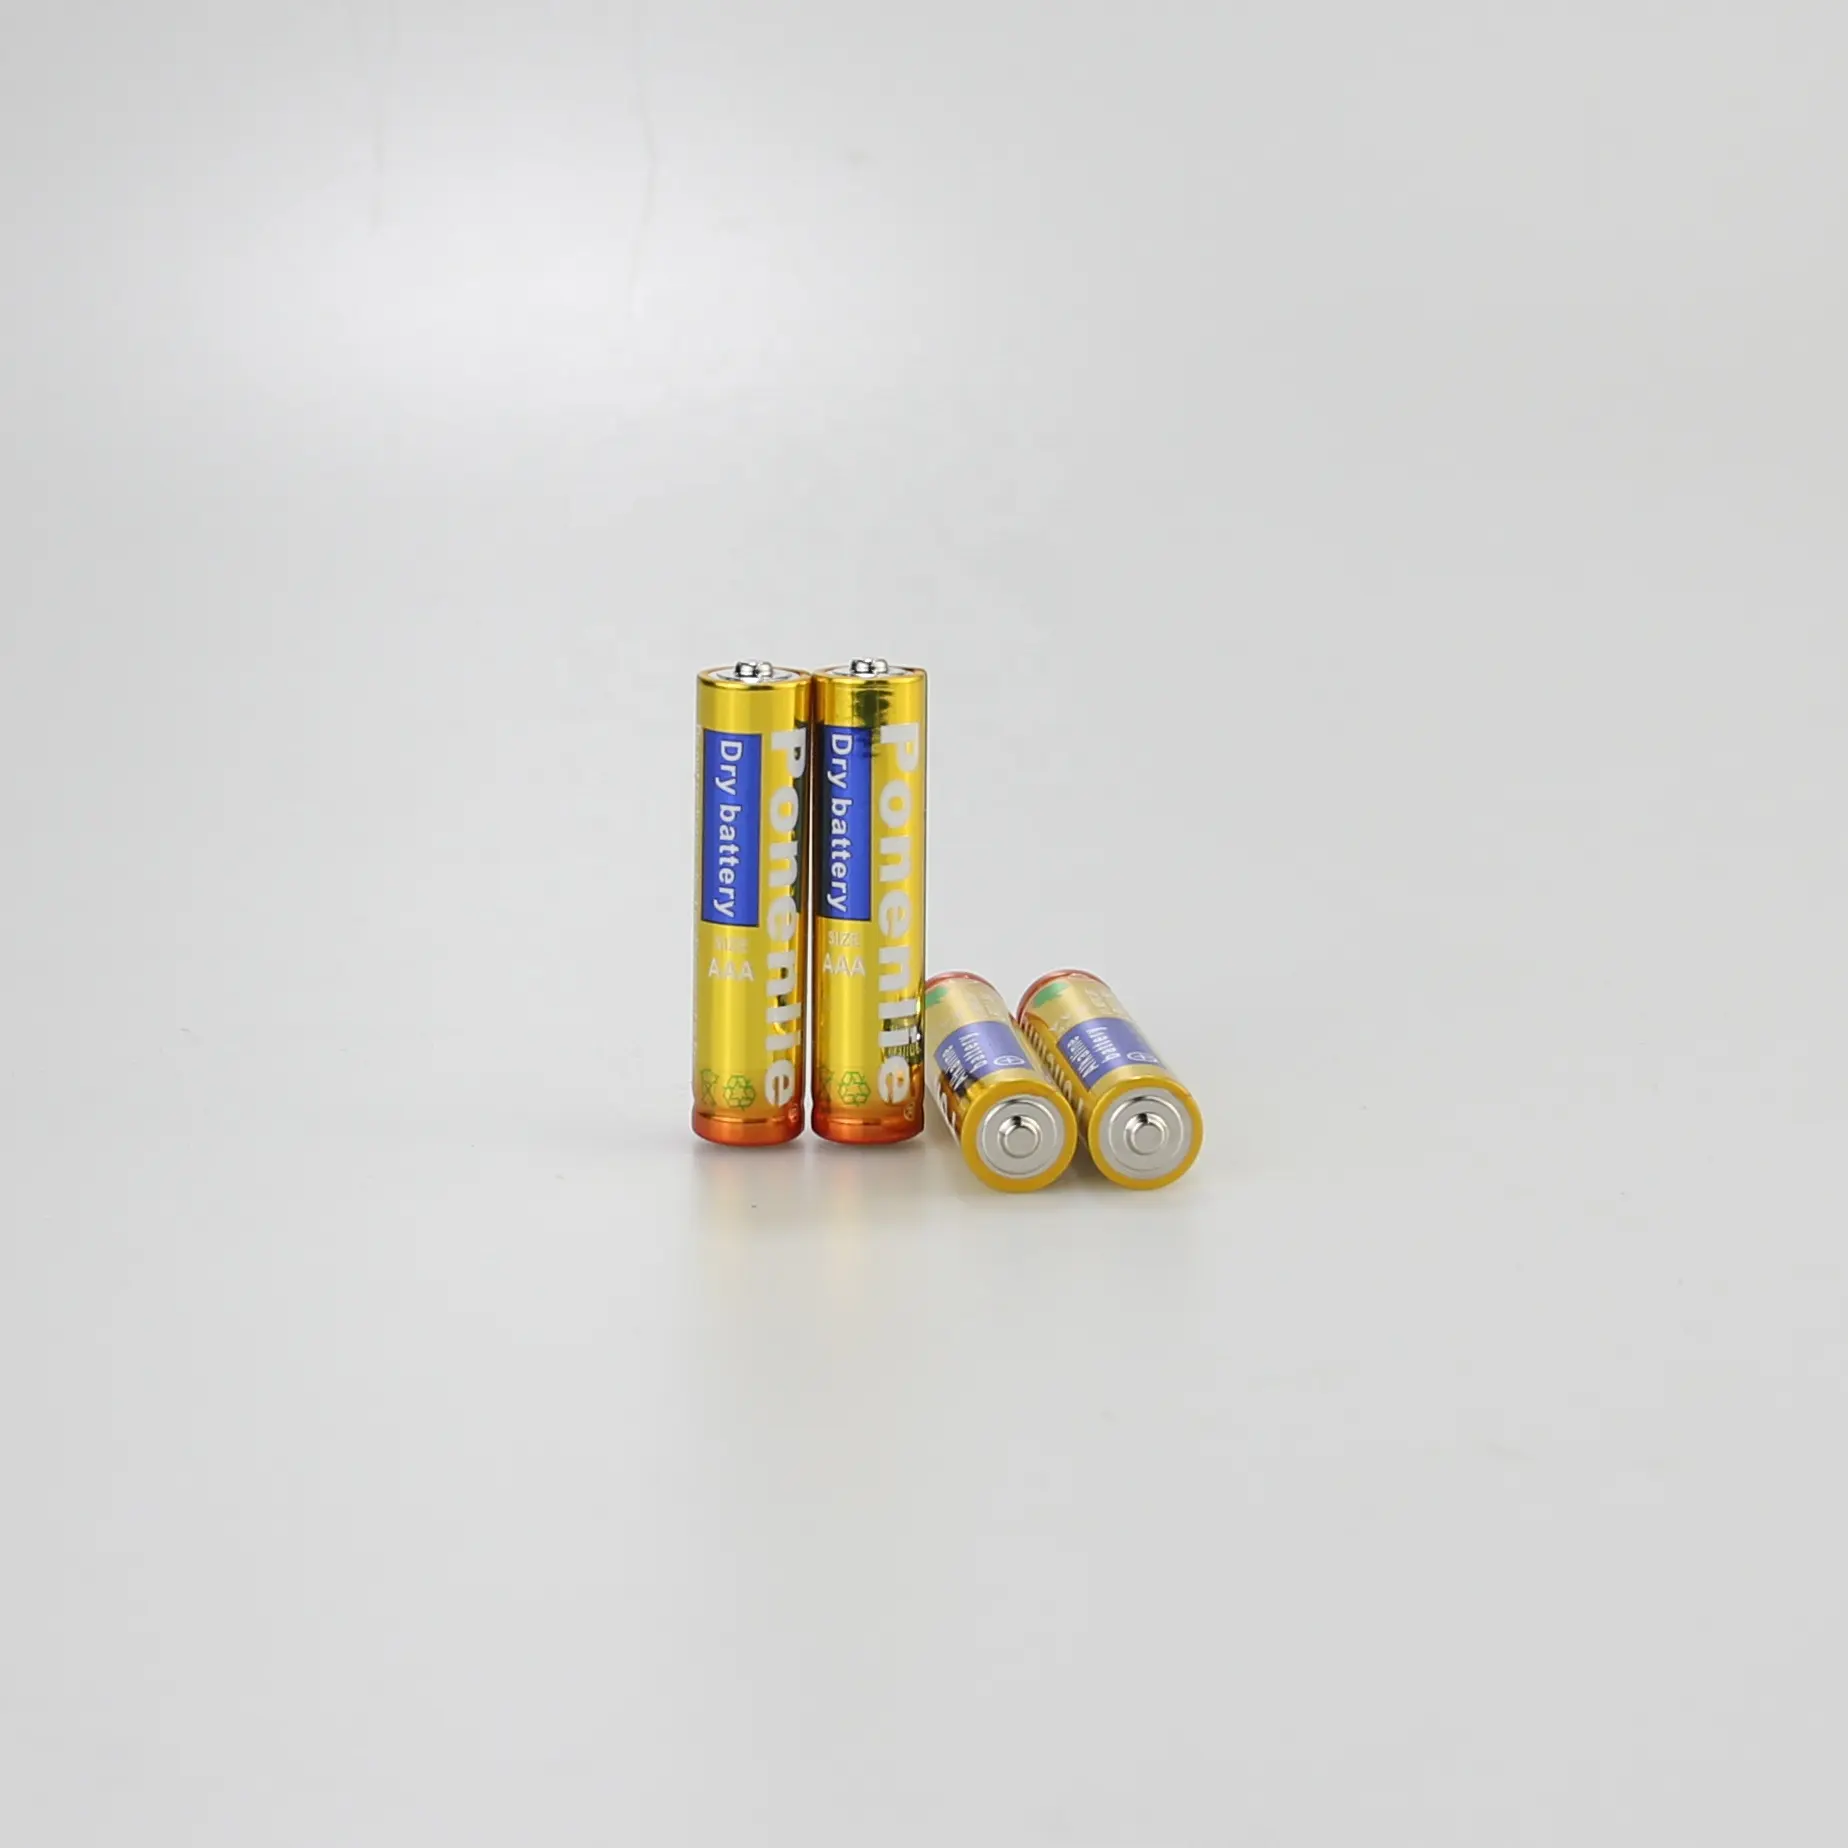 Uholan, оптовая продажа, щелочная батарея LR6 5, AA 1,5 В, щелочная батарея, низкая цена, игрушки, беспроводная мышь